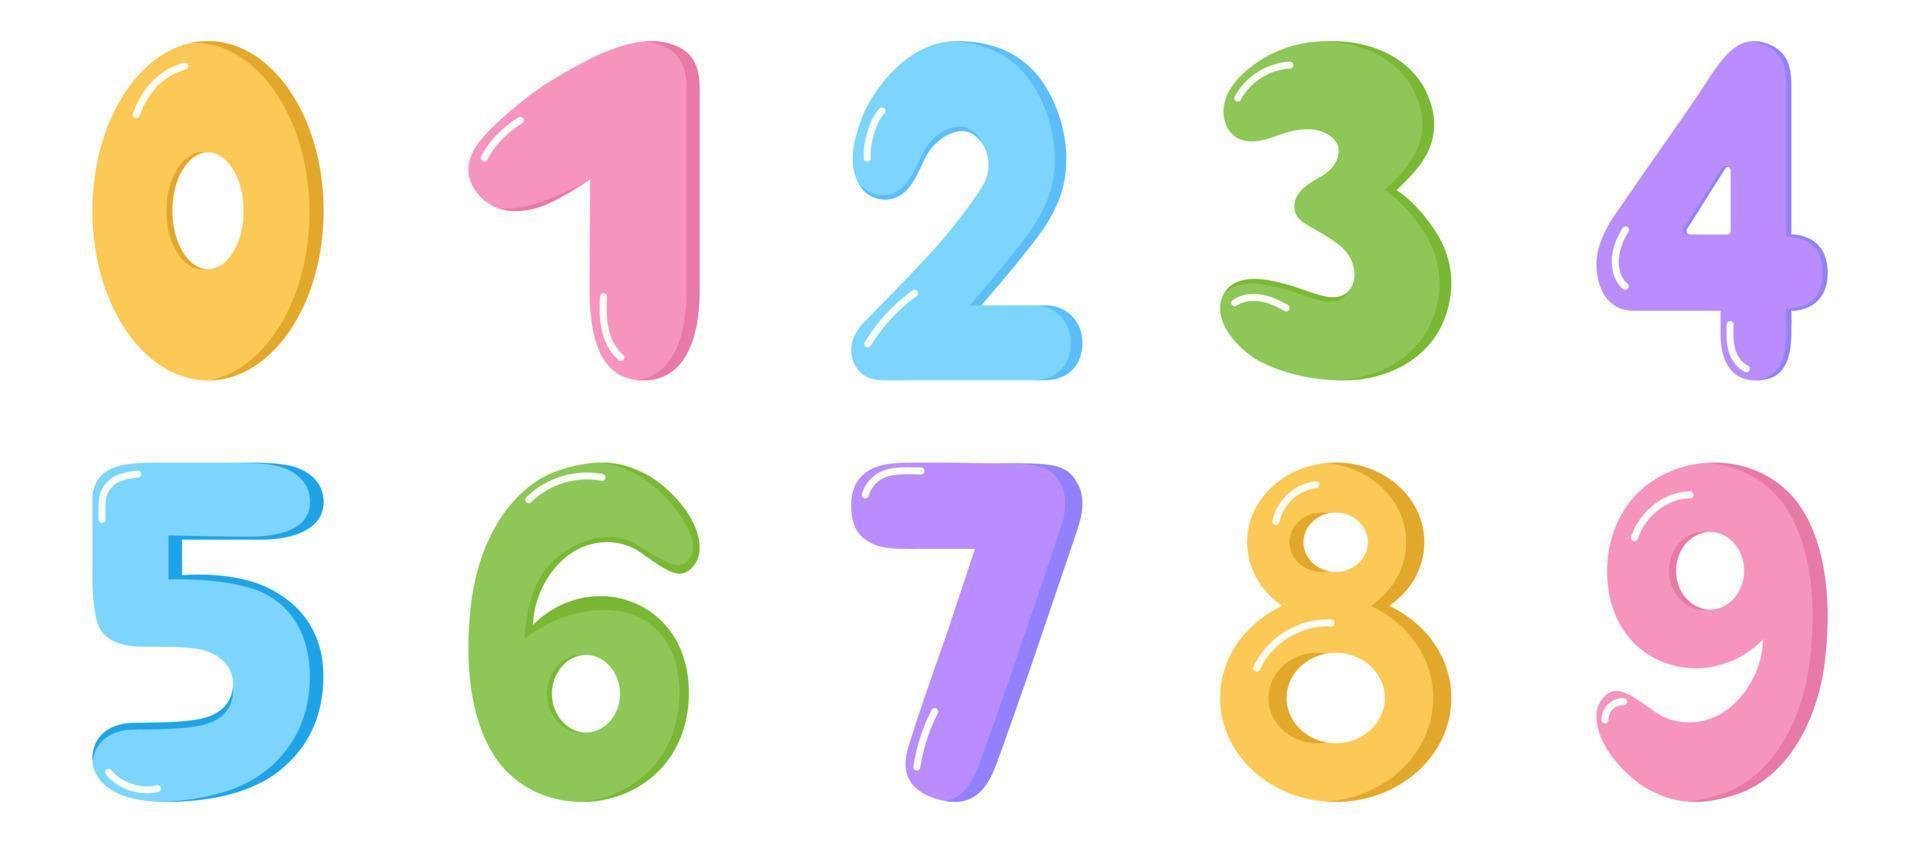 bunte karikaturzahlen gesetzt. isolierte lustige Kindernummern auf weißem Hintergrund. Vektorsatz von 1-9-stelligen Babysymbolen. mathematische symbole der schule. vektor